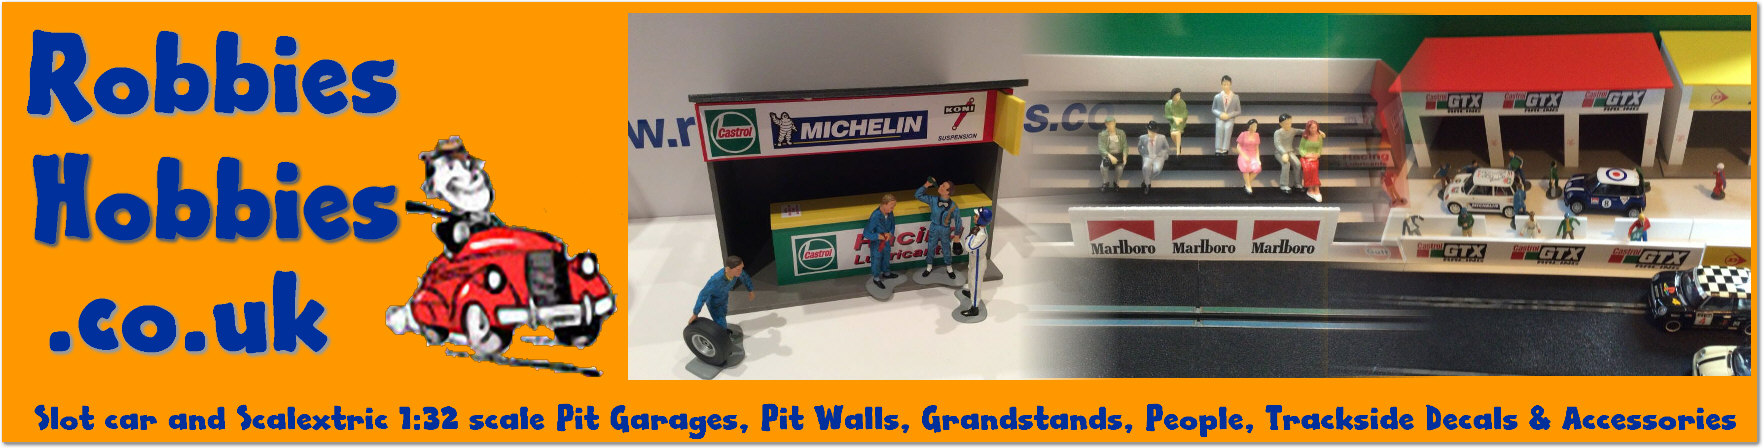 Pirelli Grandstand  - Robbies Hobbies, Slotcars and  trackside buildings